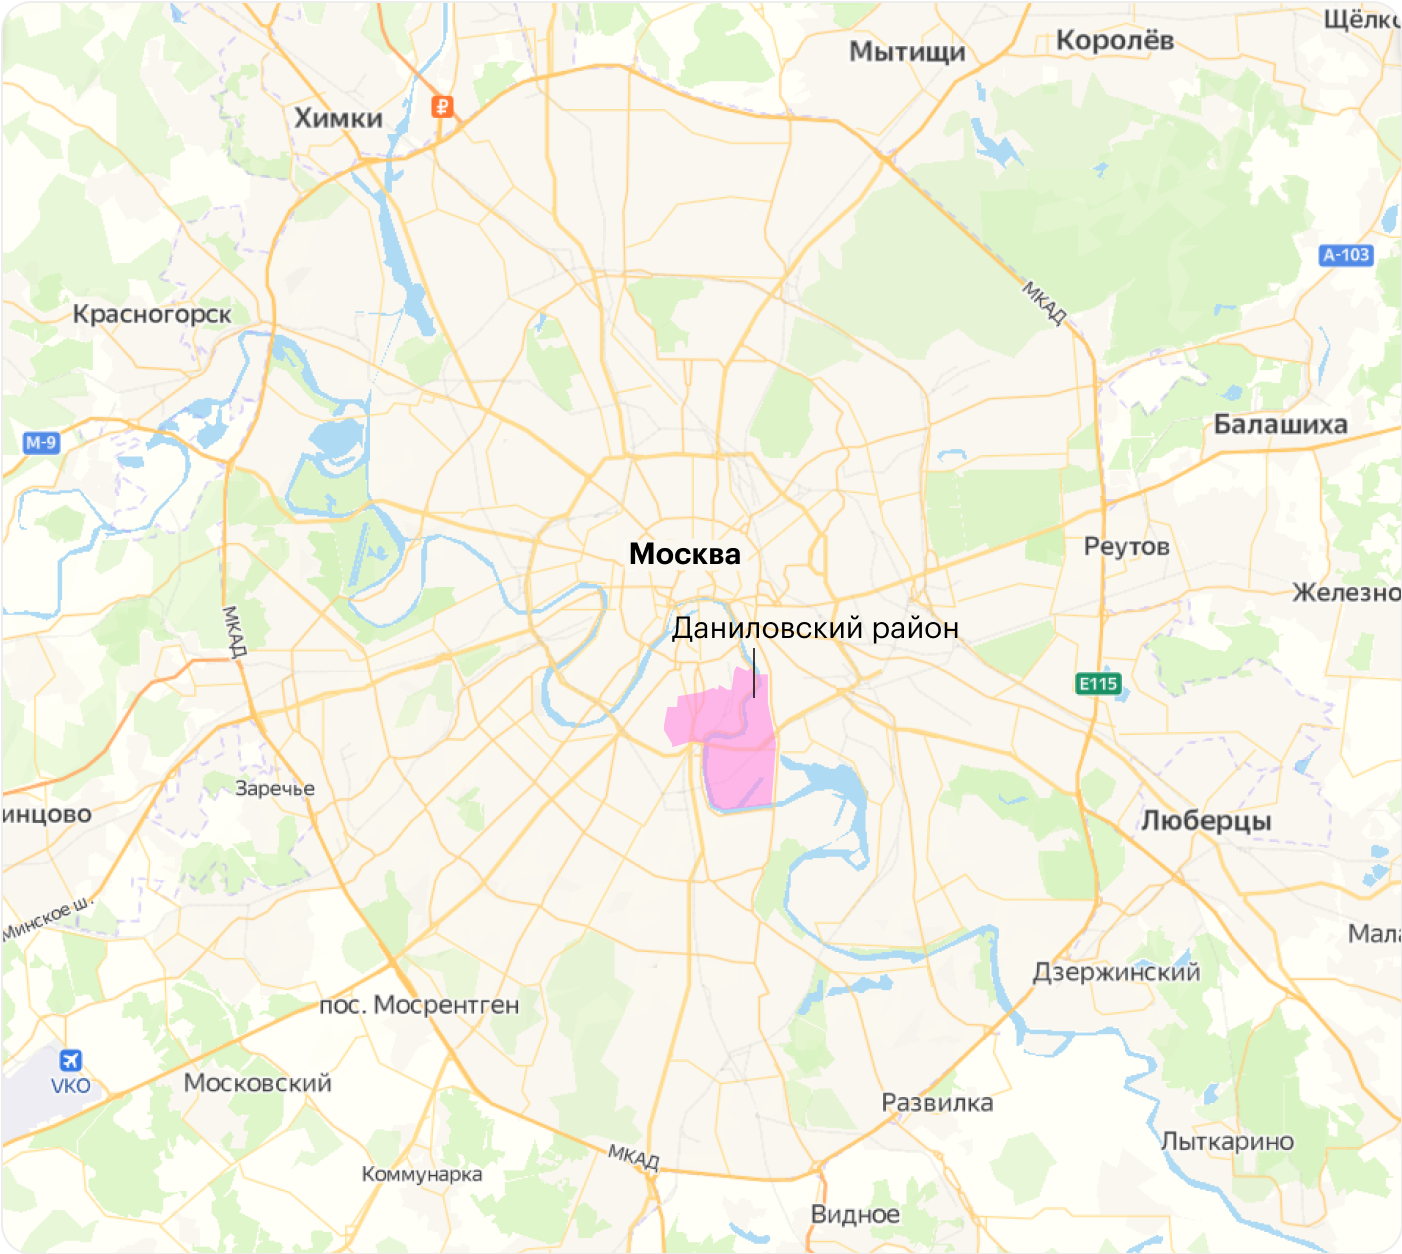 Даниловский район — это почти центр Москвы. Источник: «Яндекс-карты»